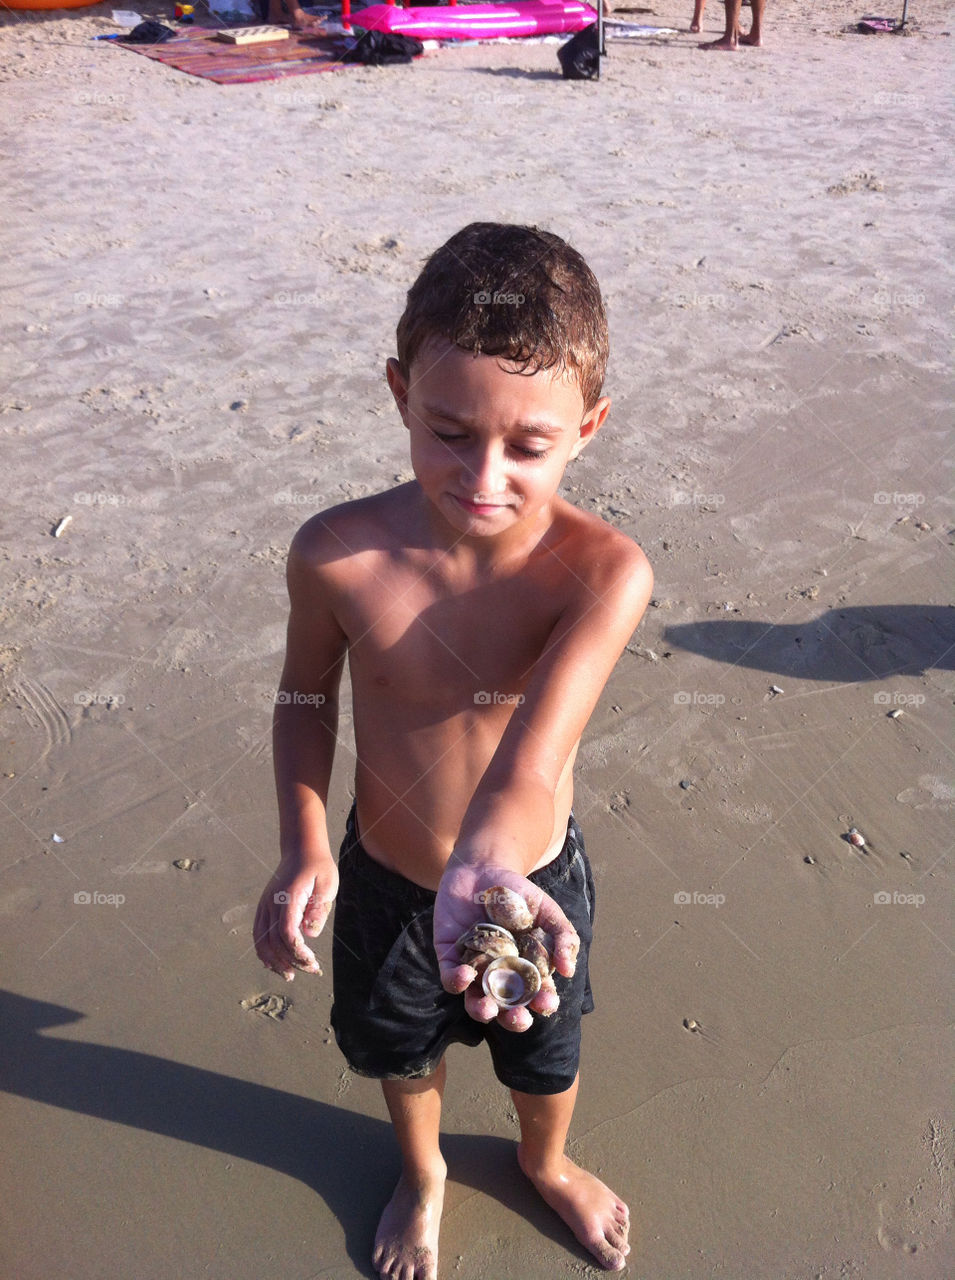 sand kid boy sea by oriland123